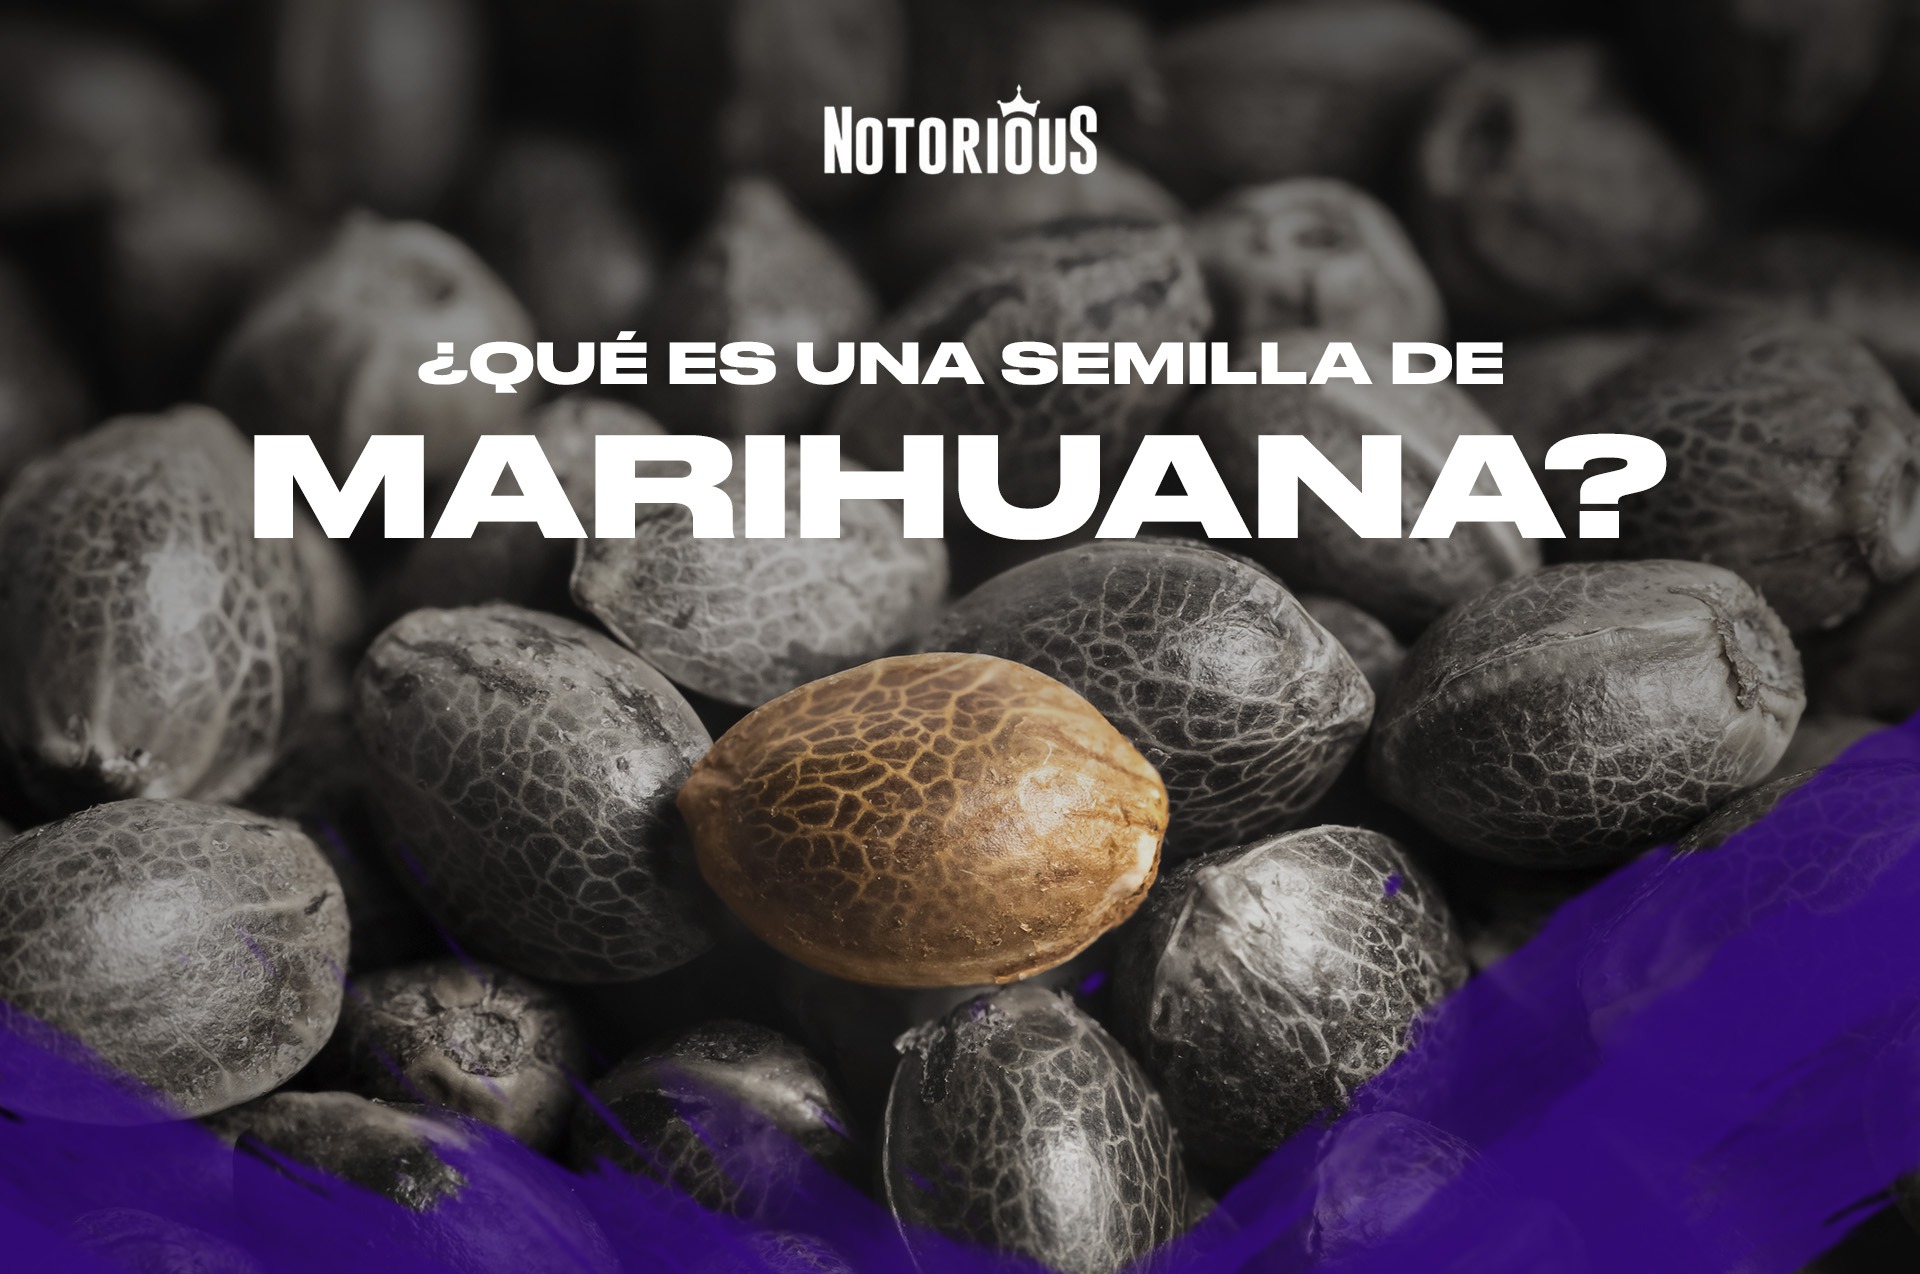 El tamaño, el color y la forma de las semillas de marihuana: indicadores  que pueden ser engañosos